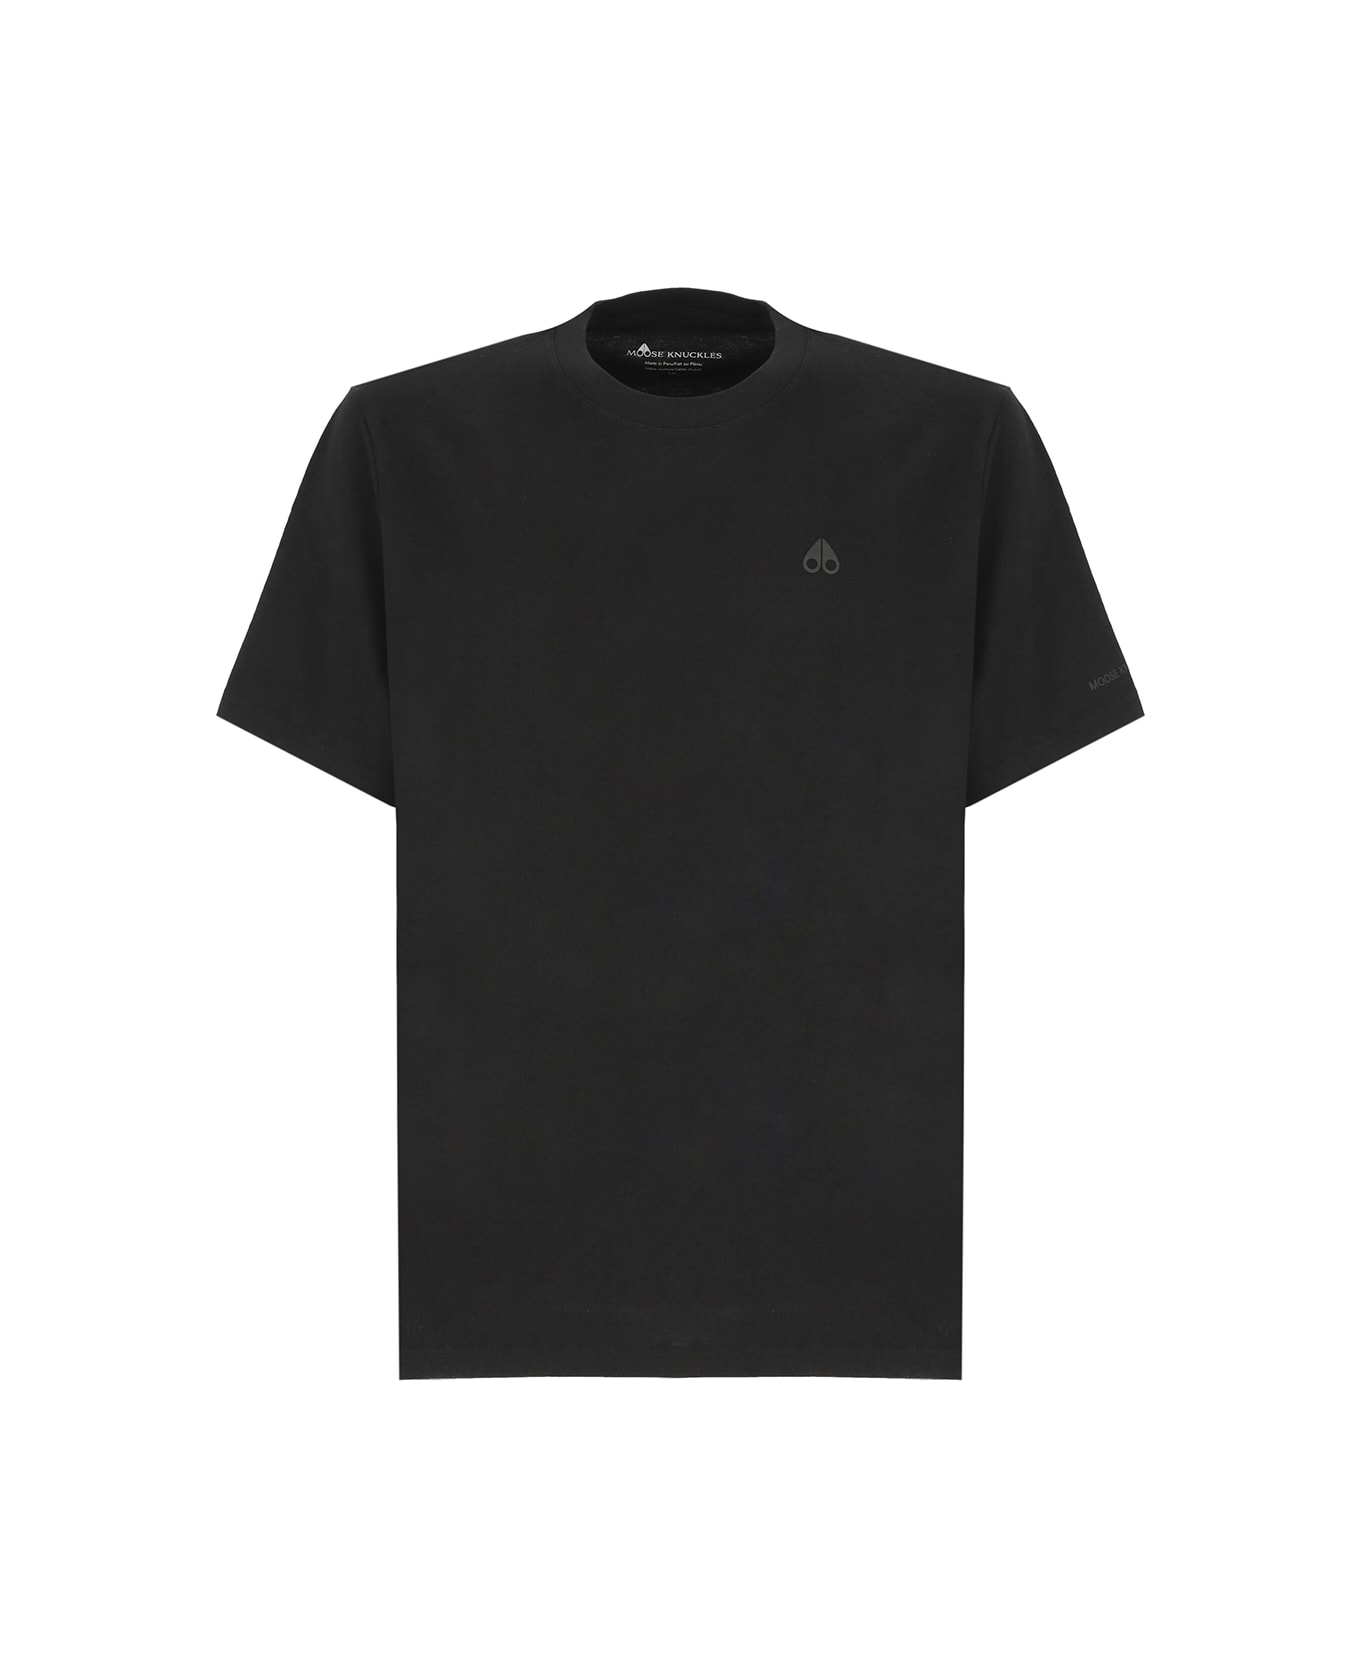 Moose Knuckles Logoed T-shirt - Black